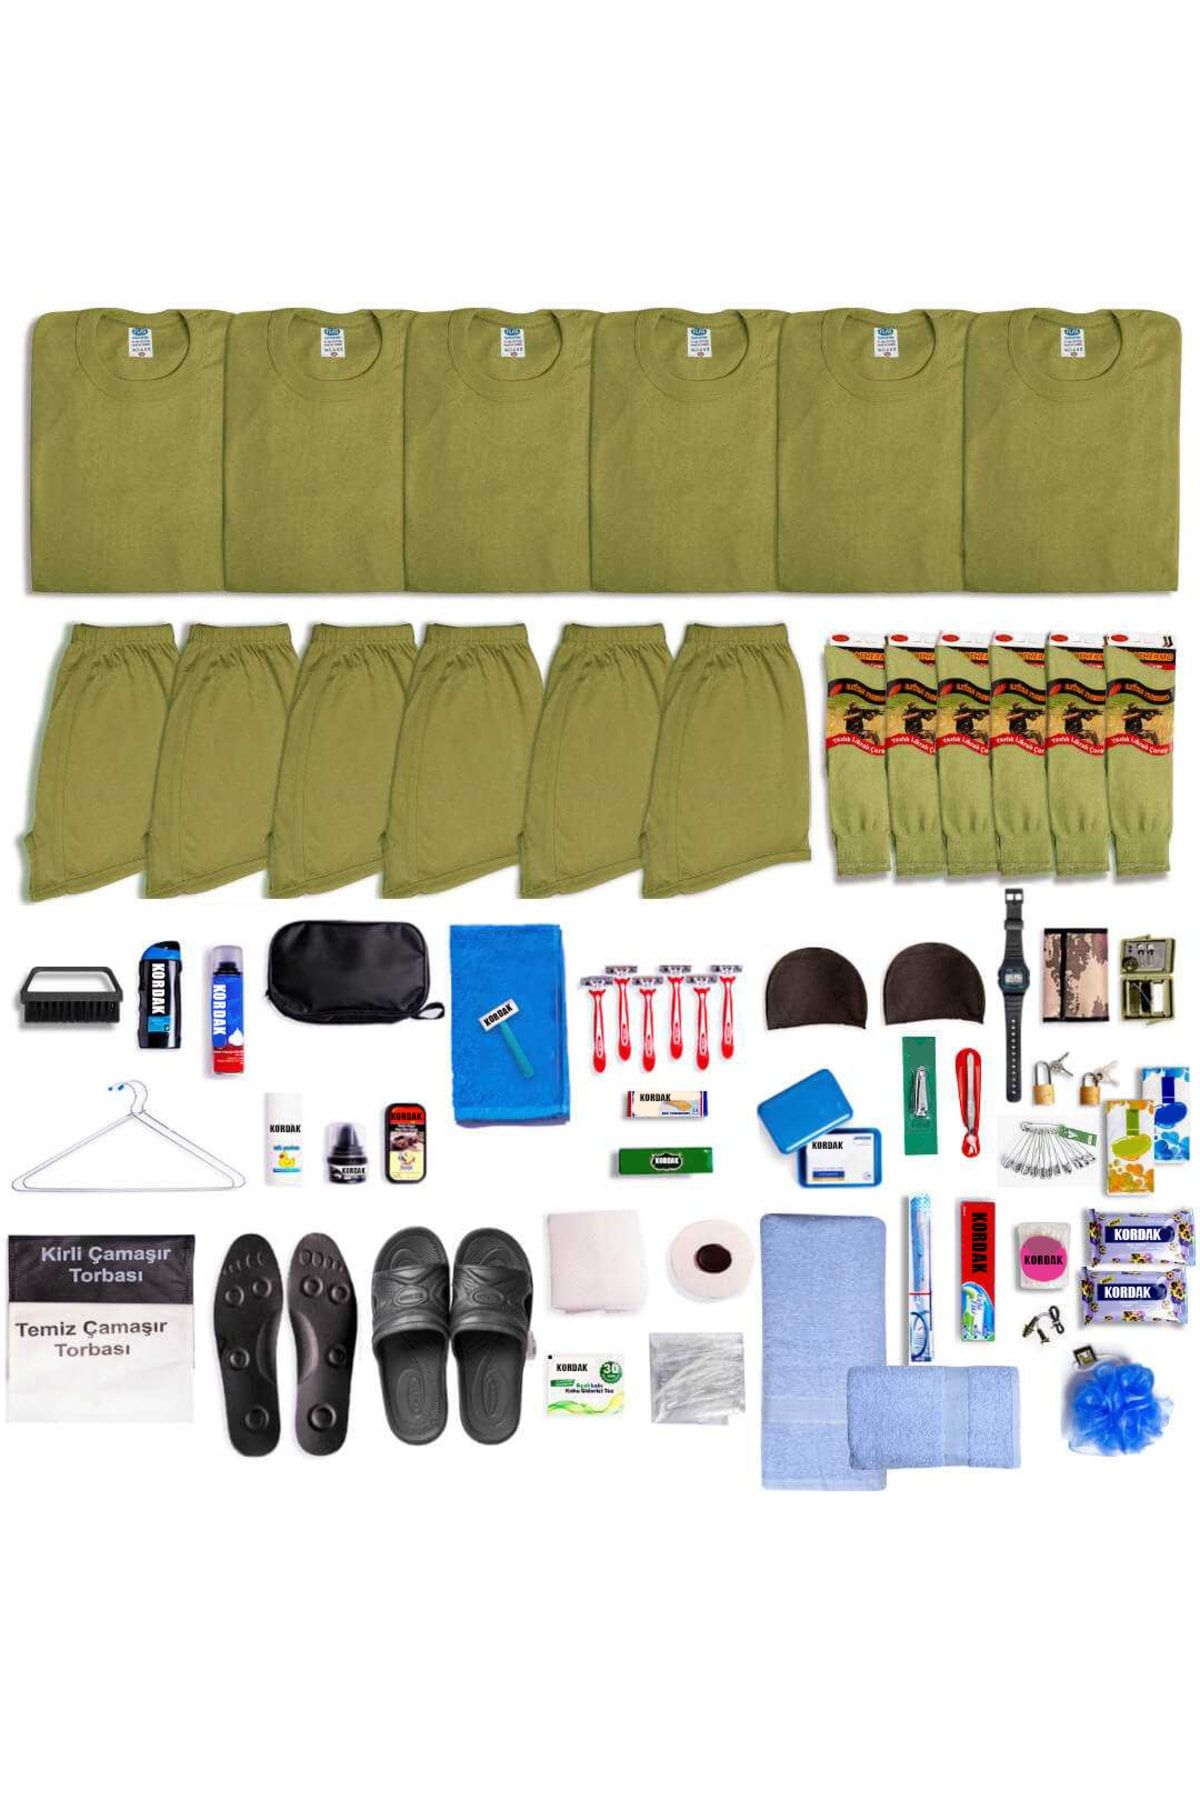 Asker Kolisi 6'lı Her Şey Dahil Asker Seti - Bedelli Askerlik Malzemeleri - Bedelli Asker Paketi